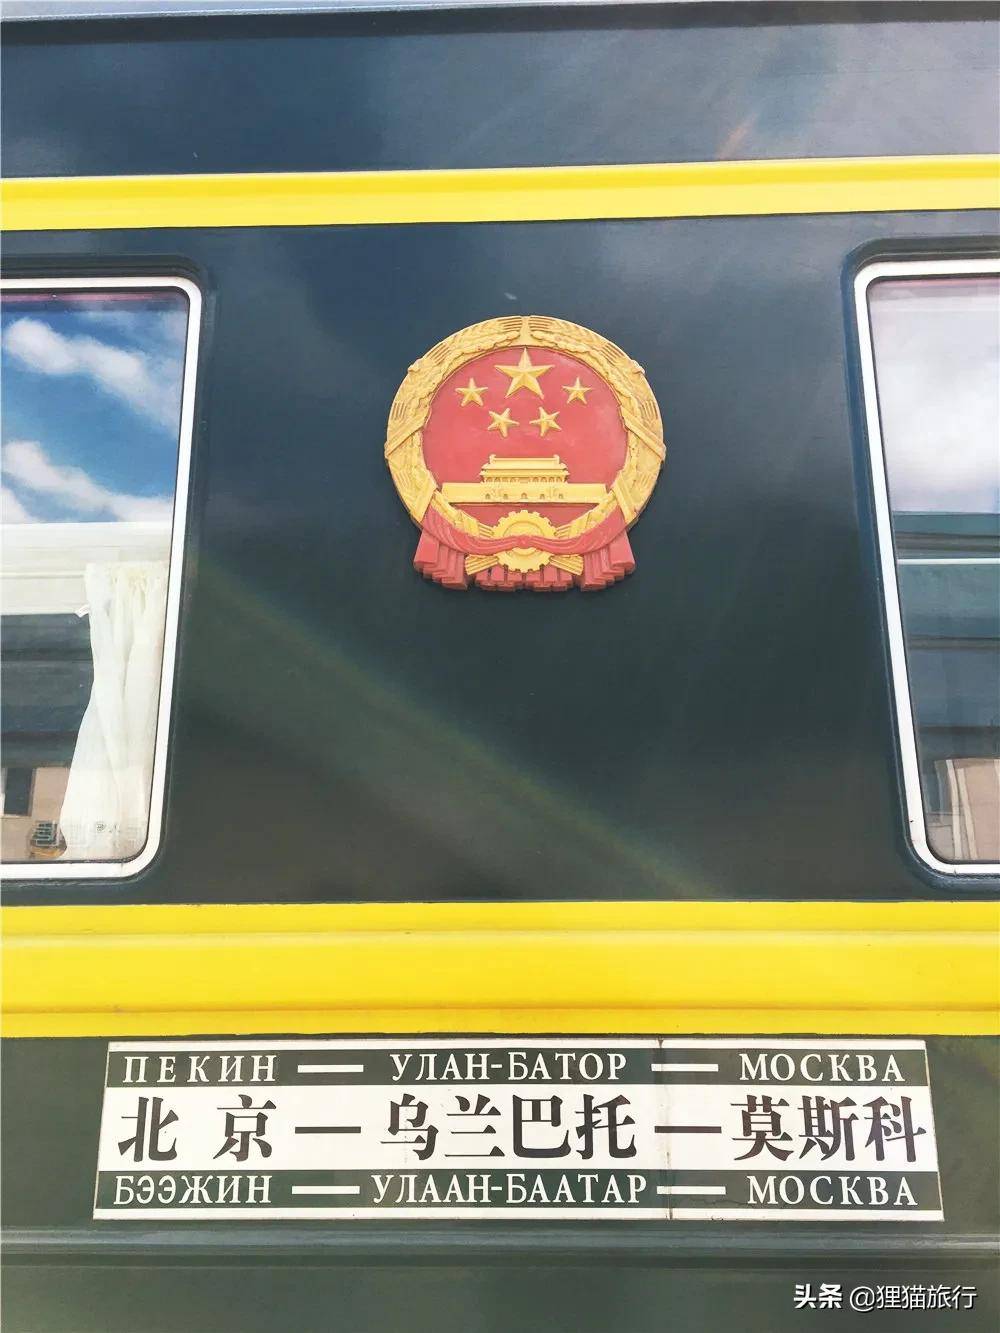 北京到莫斯科的K3次列车，途经乌兰巴托、贝加尔湖，火车还要换轮